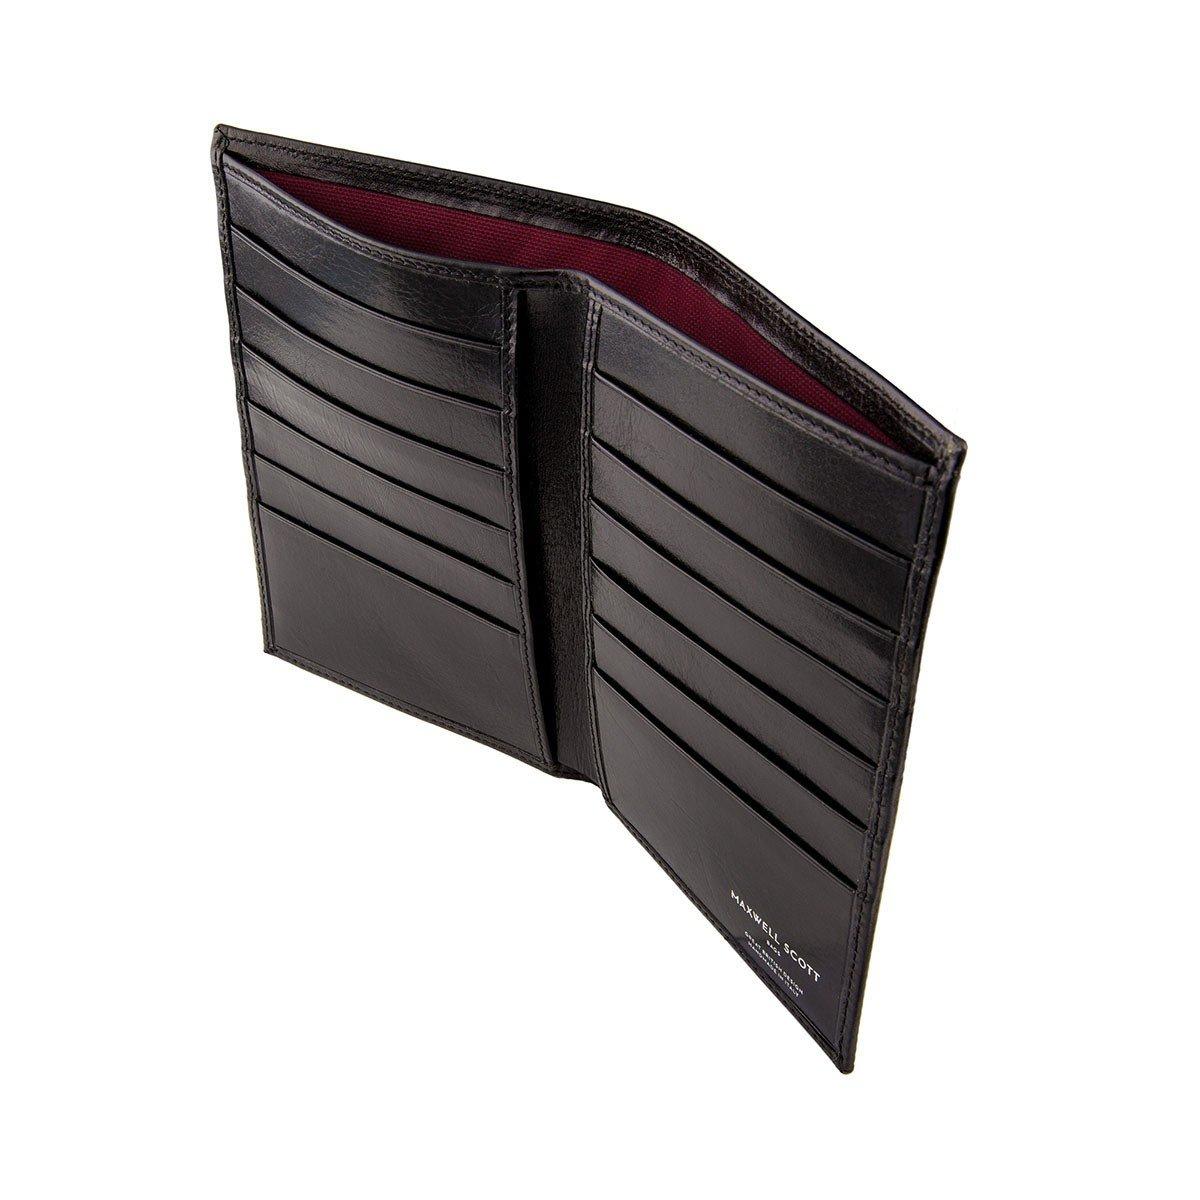 Maxwell Scott  Pianillo RFID - Luxus  Leder Brieftasche mit RFID Blocker 